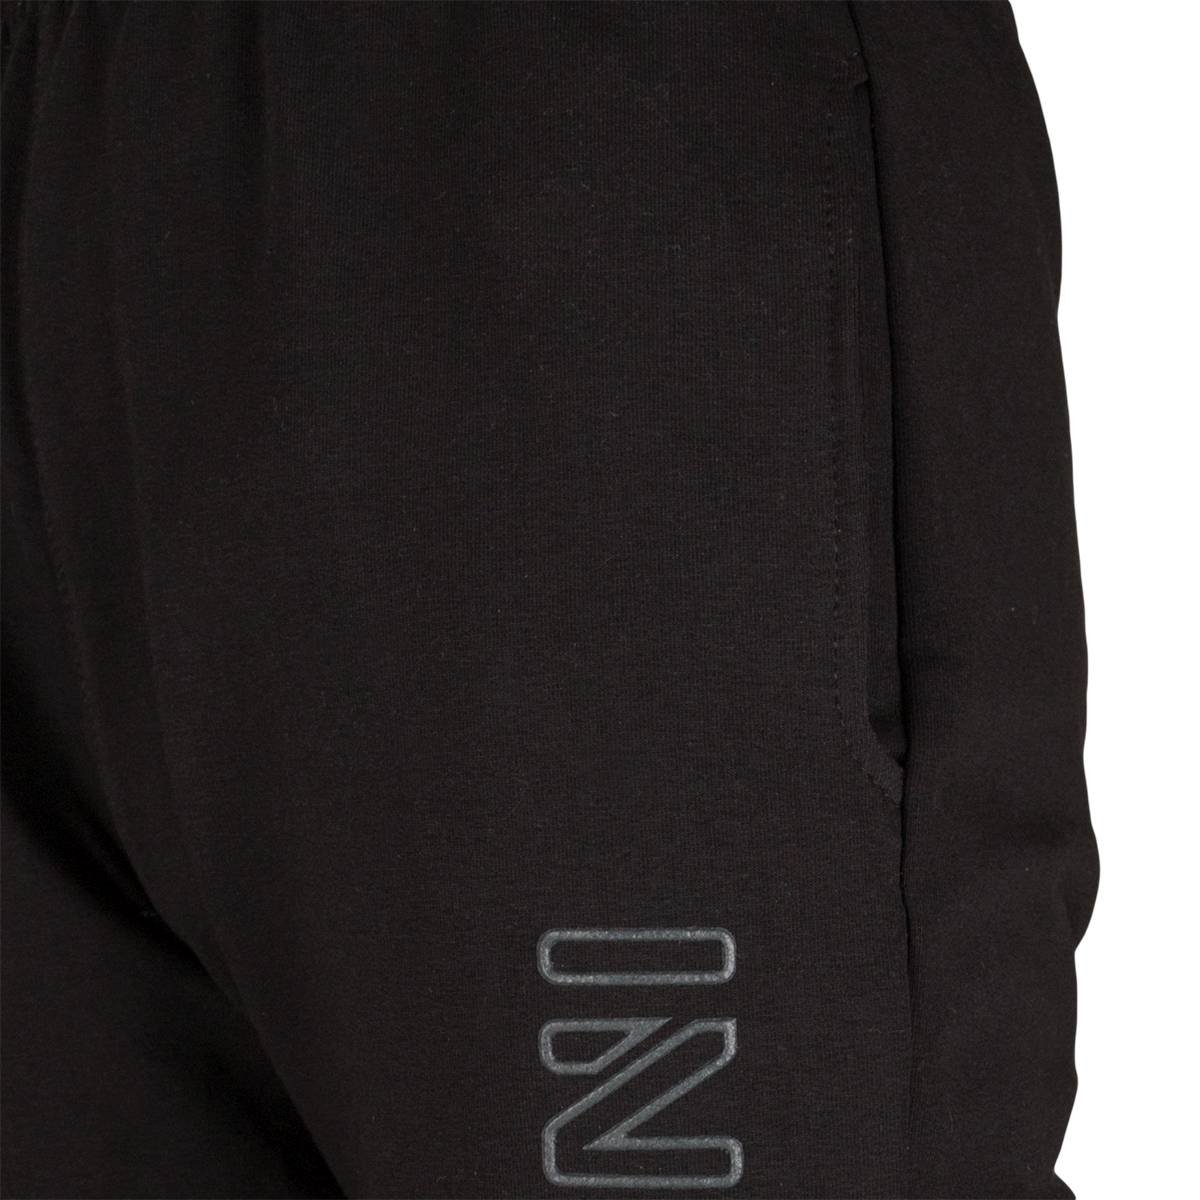 Spodnie dresowe dla chłopca, kolor czarny, aplikacja na nogawce INVASION, Tup Tup